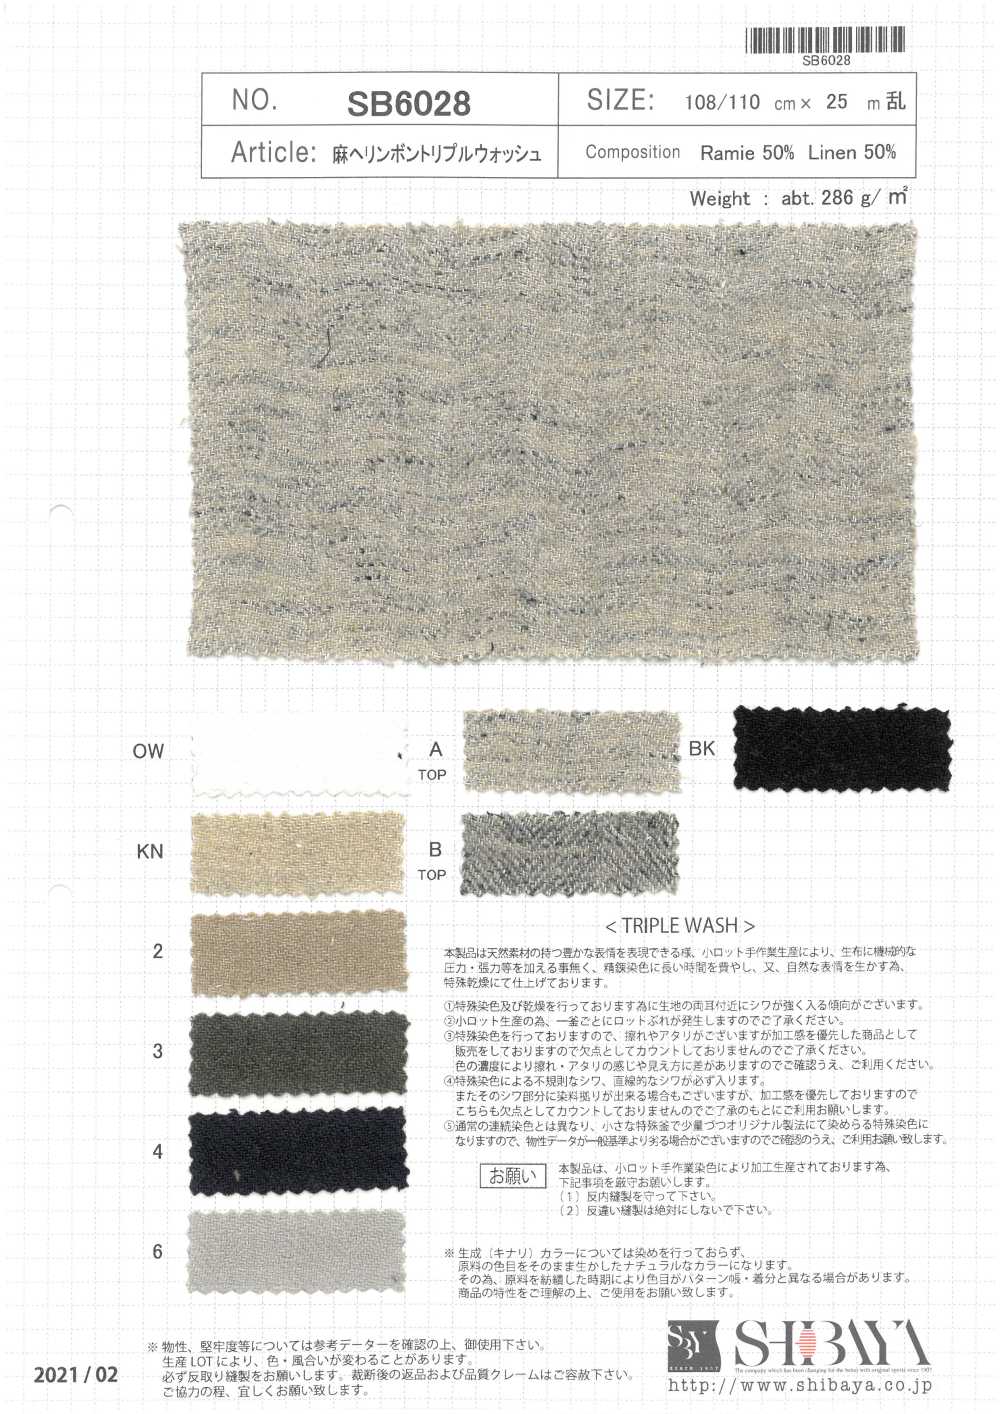 SB6028 Lavagem Tripla Espinha De Peixe De Linho[Têxtil / Tecido] SHIBAYA